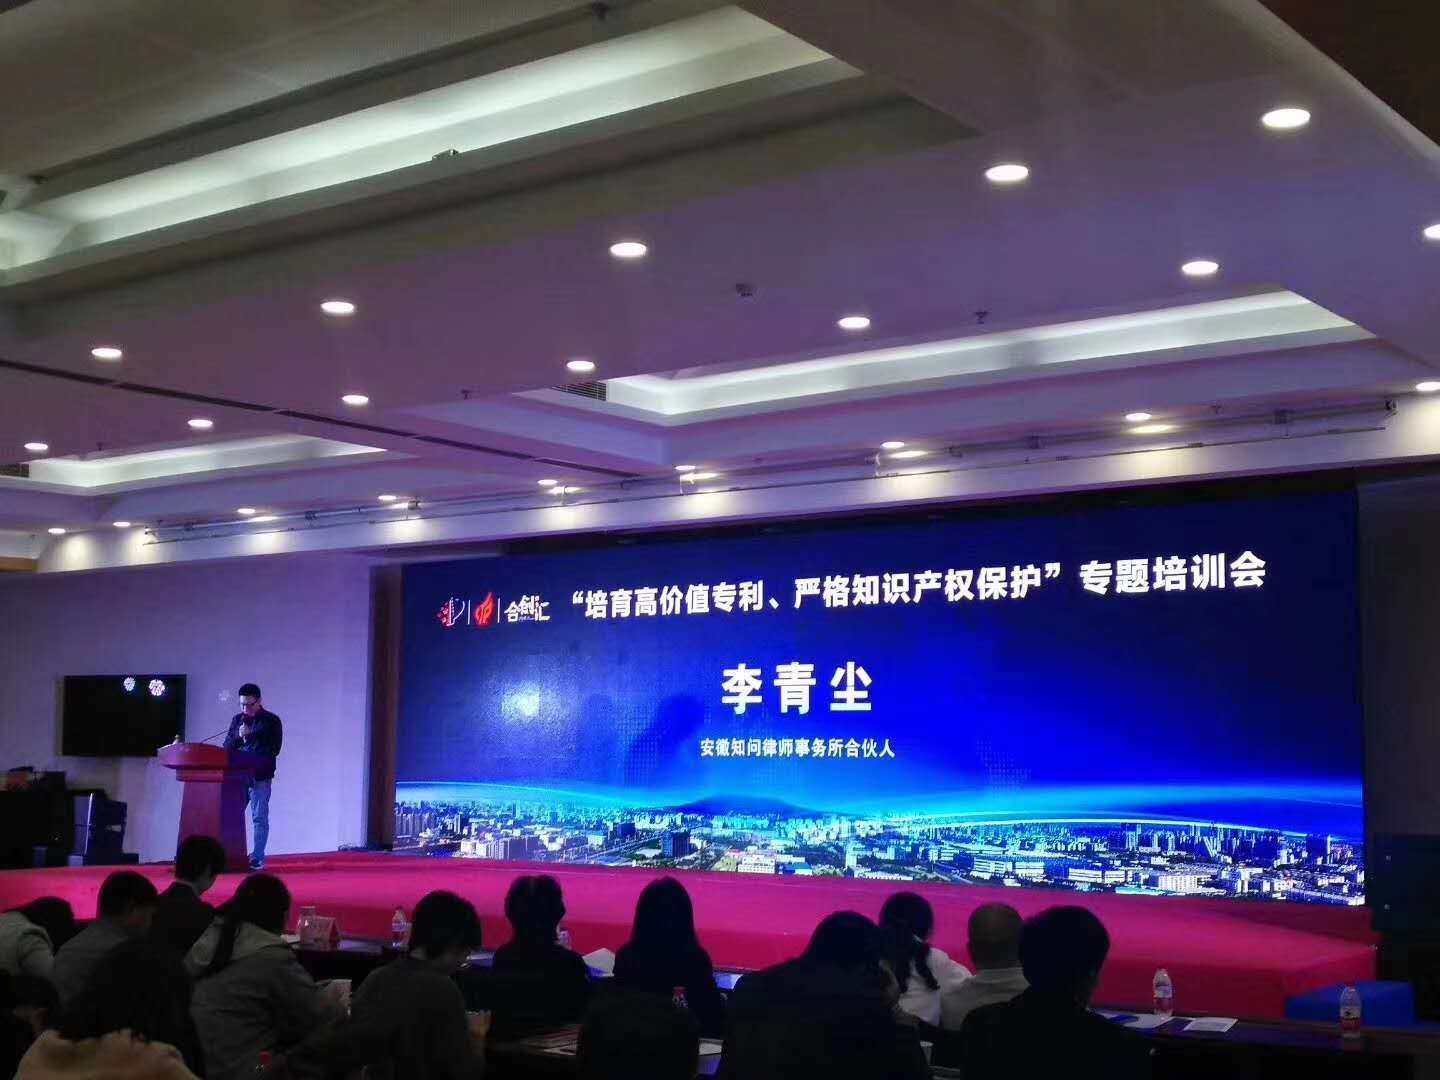 李青尘律师应合肥市高新区管委会邀请为企业人员授课